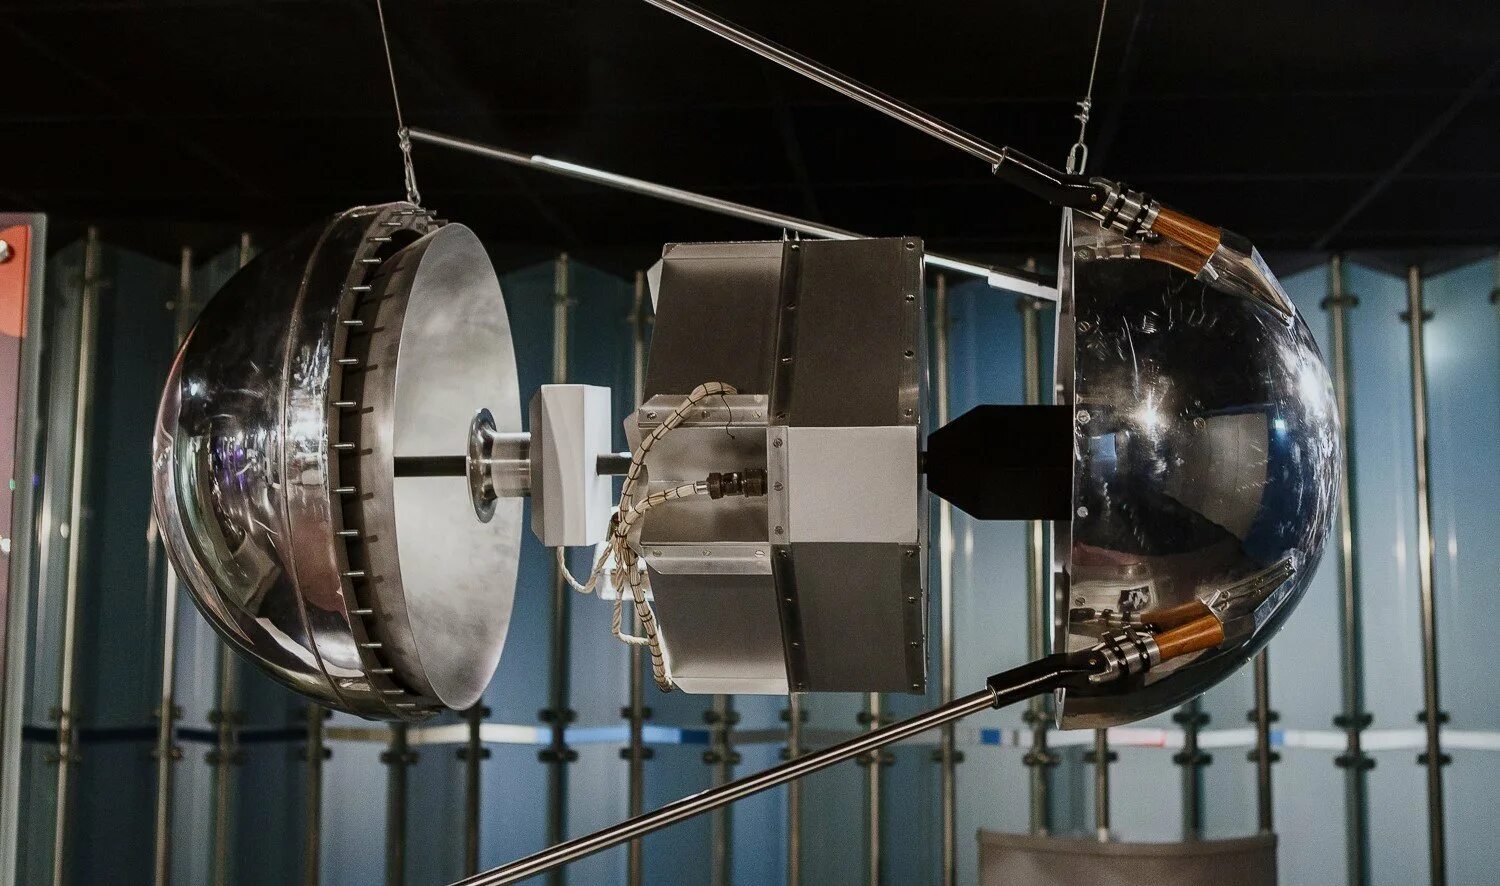 Фото первого искусственного спутника. Спутник 1 первый искусственный Спутник земли. Первый Спутник 1957. ПС-1 Спутник. Первый ИСЗ "Спутник".